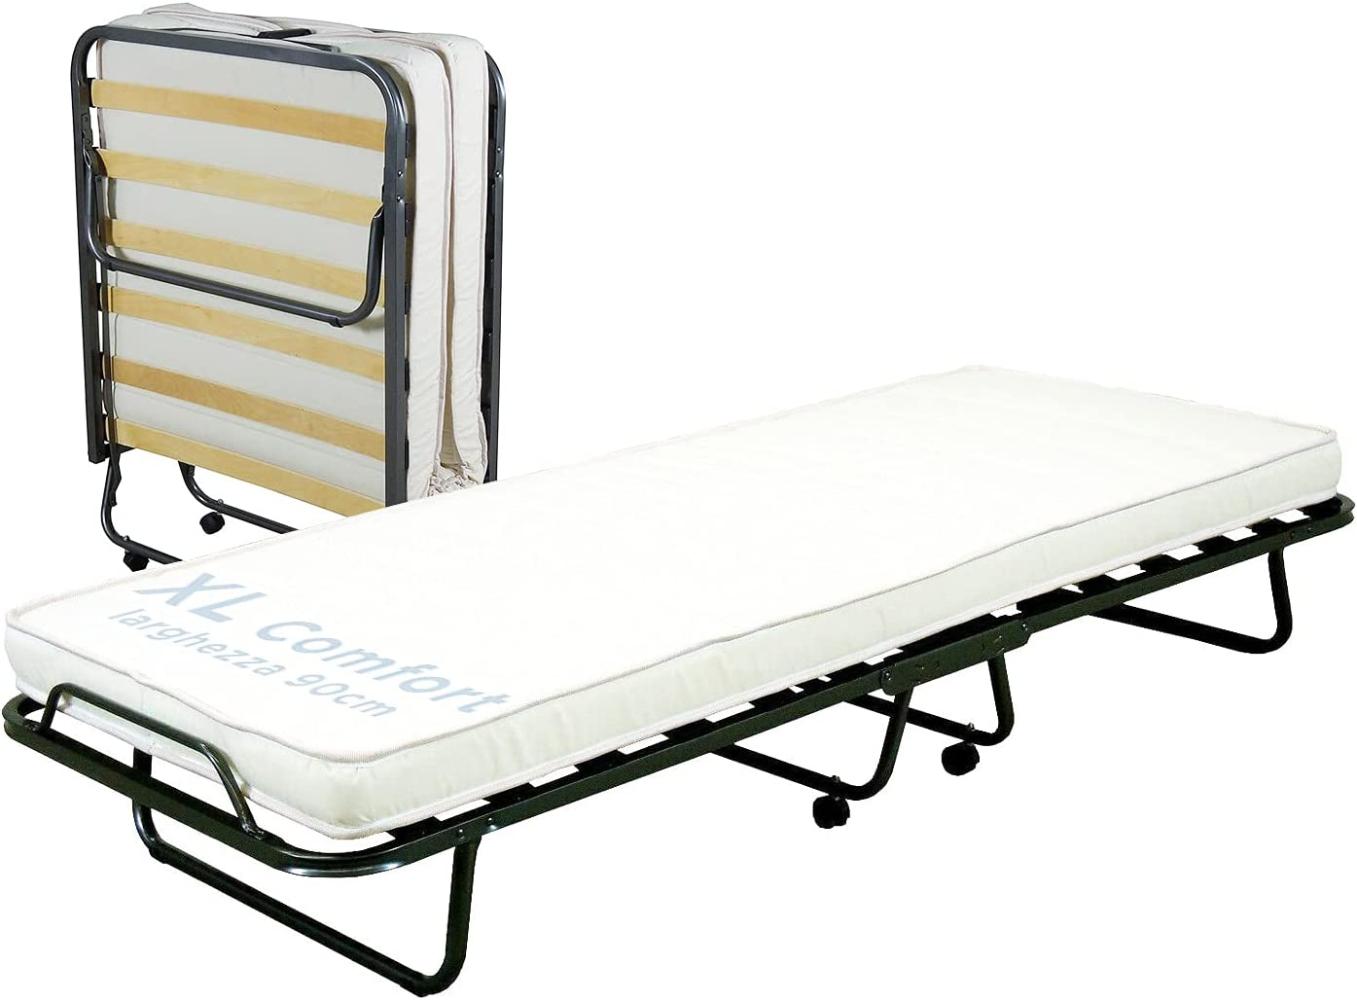 Cortassa - Klappbett XL Comfort mit Matratze aus Polyurethan, Höhe 10 cm, Einzel-Lattenrost aus Holz, 90 x 200, platzsparendes Bett mit Rollen Bild 1